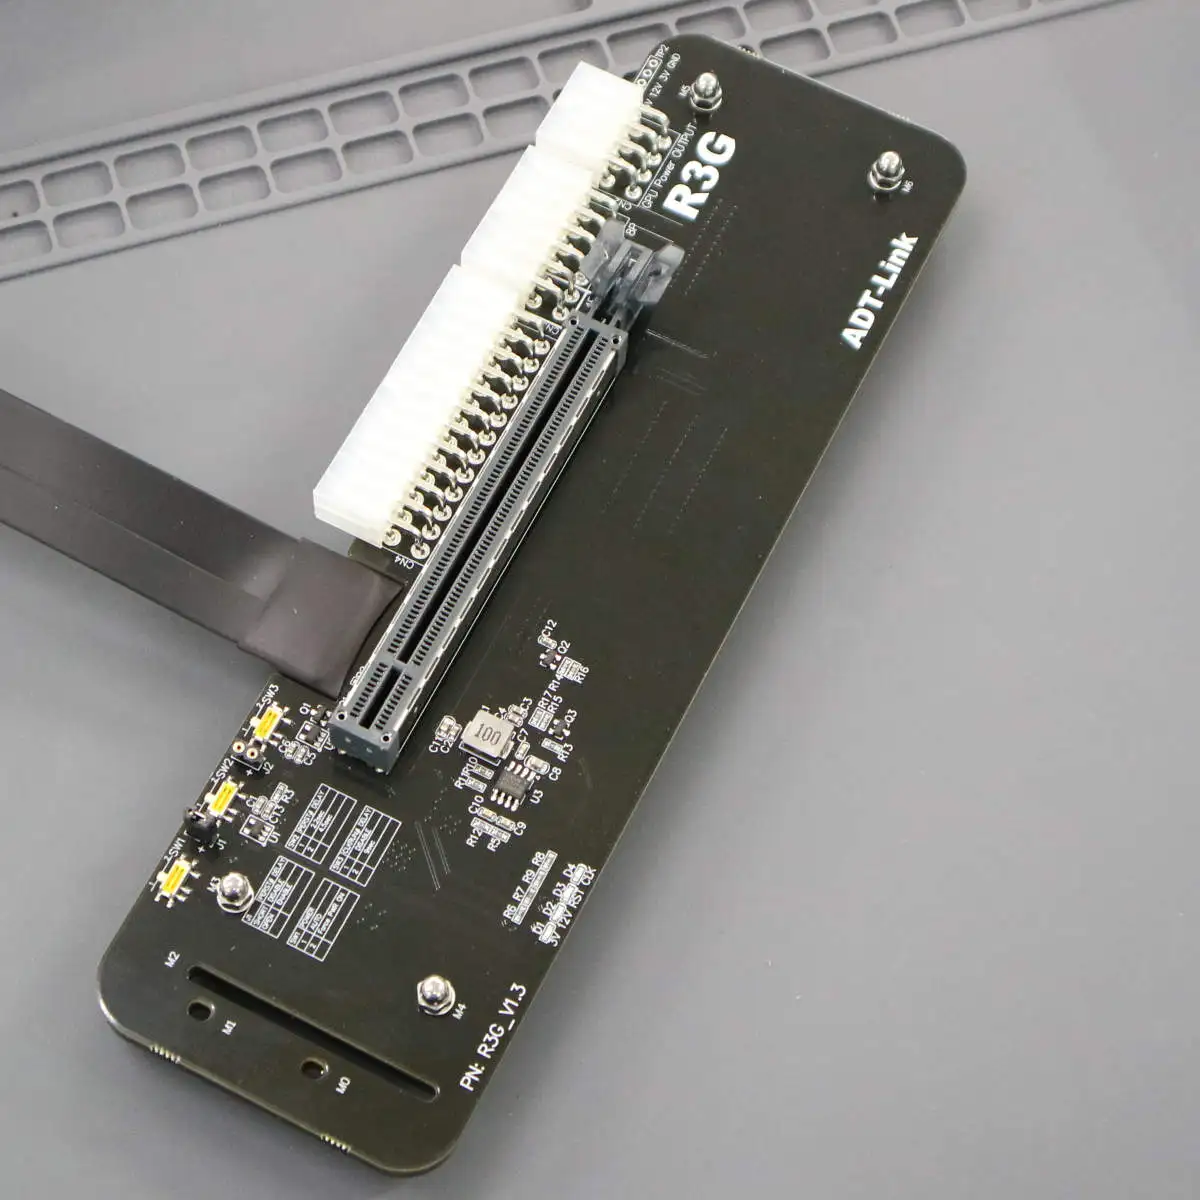 Видеокарта ноутбука R3G, внешняя для док-станции M.2 nvme PCIe 3.0 /4.0x4, на полной скорости поддерживает только интерфейс M.2 NVMe 1